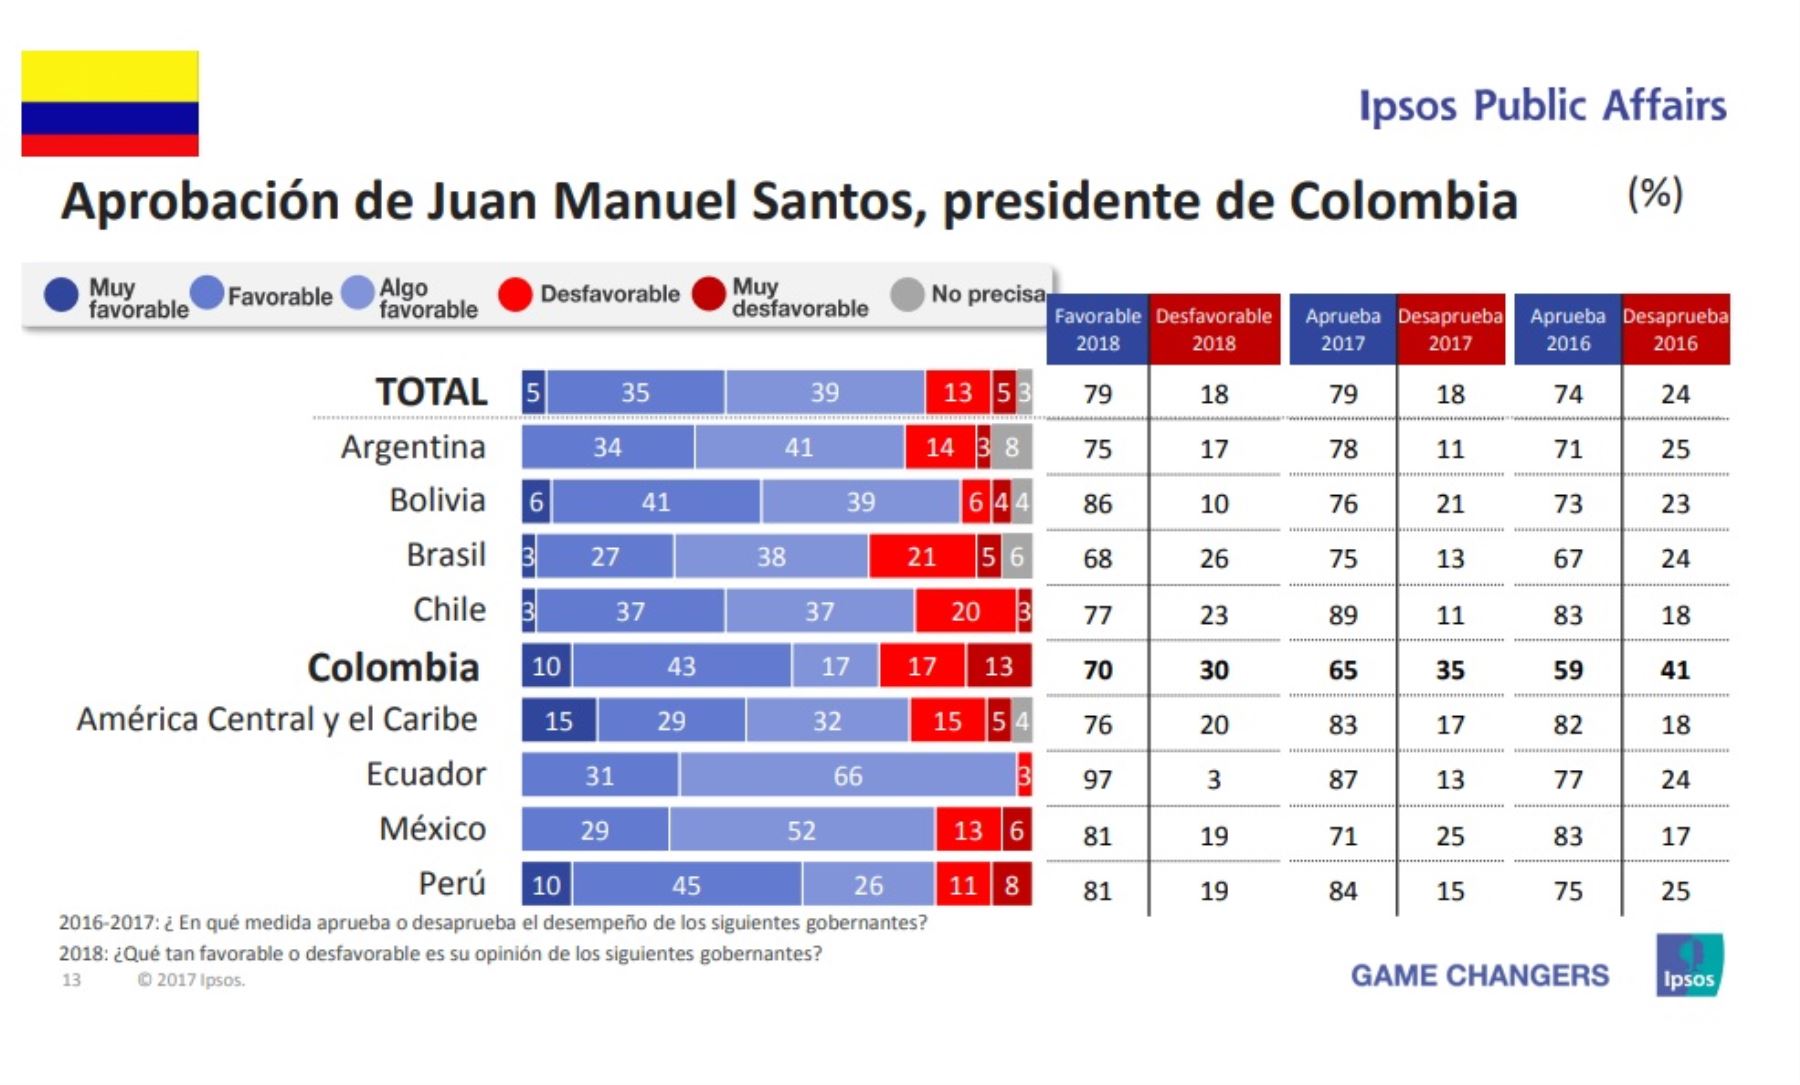 Aprobación del presidente de Colombia, Juan Manuel Santos. Encuesta Ipsos Public Affairs 2018.